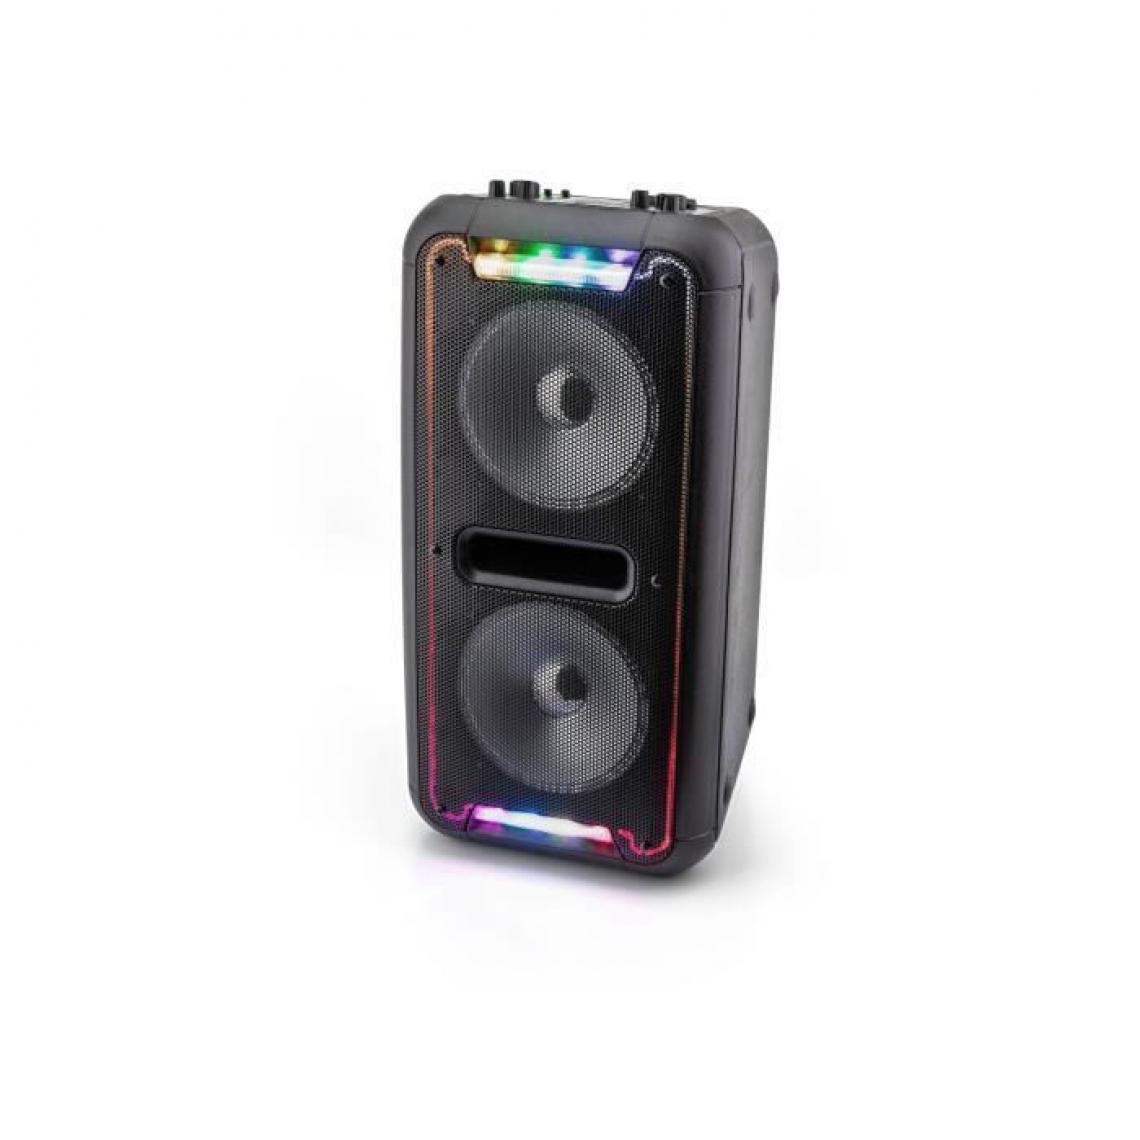 Caliber - CALIBER HPA502BTL Enceinte portable Bluetooth - Lampes LED multicolores - Batterie intégrée - Option Karaoke Sing-Along - Pack Enceintes Home Cinéma